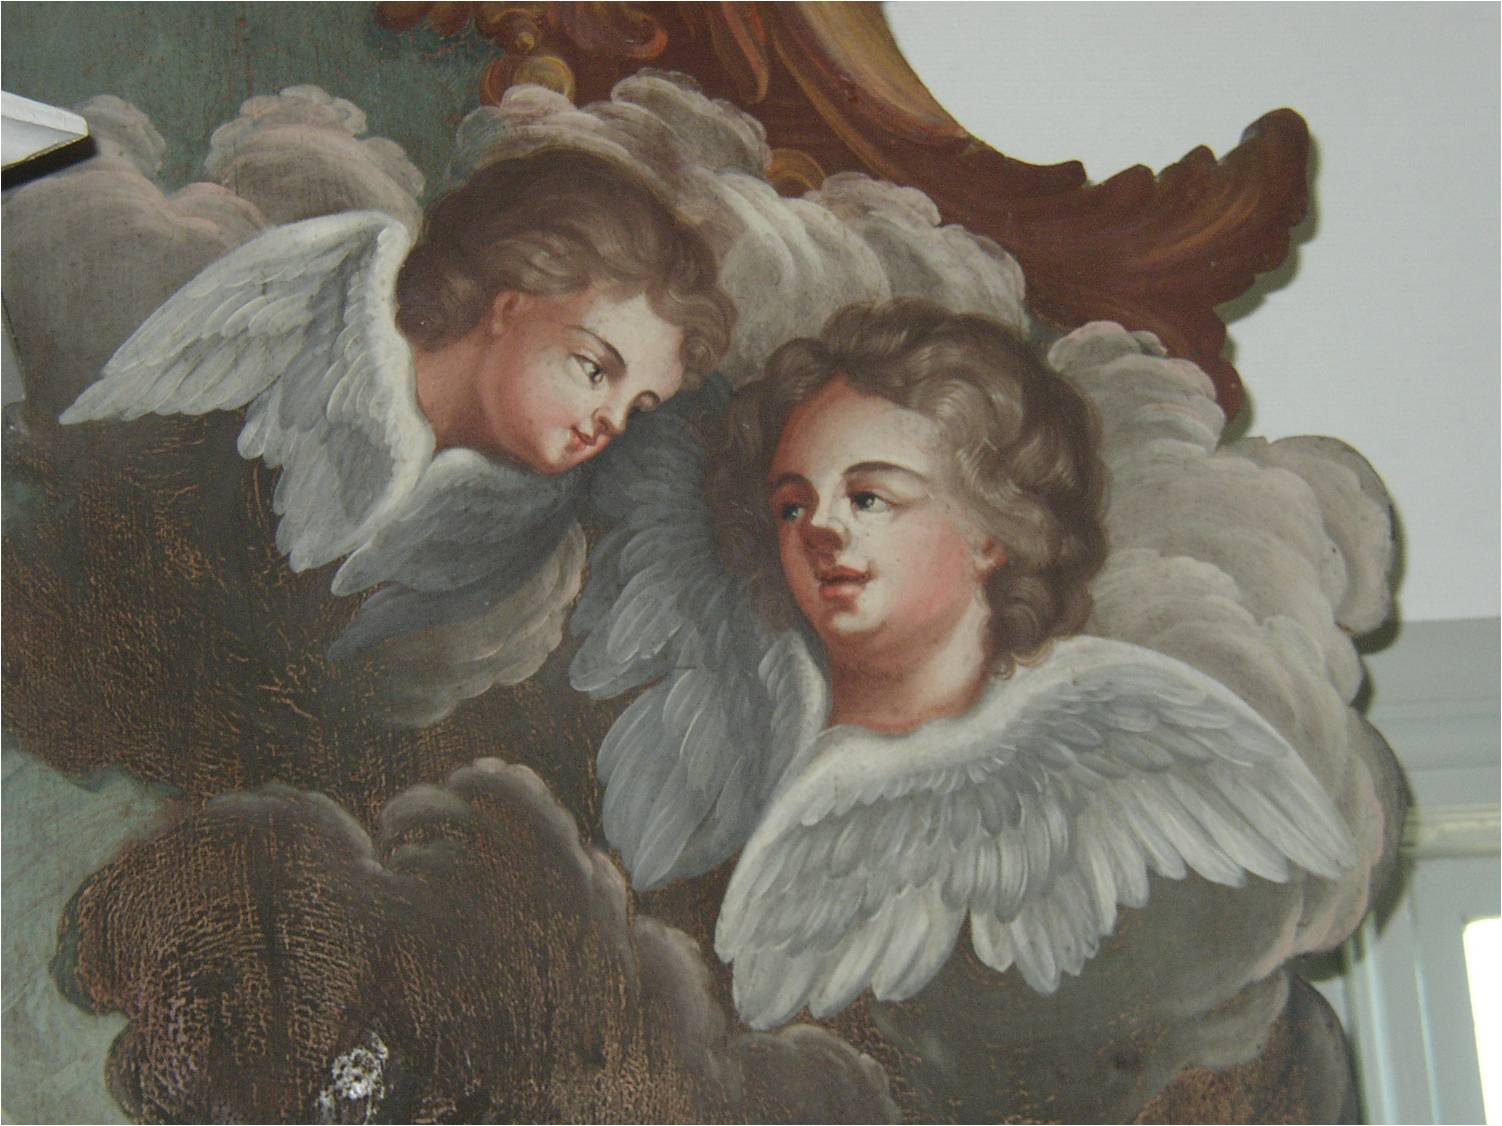 Detaljfoto av altaruppsatsens måleri, troligen utfört av hudiksvallskonstnären Paul Hallberg vid slutet av 1700-talet. 